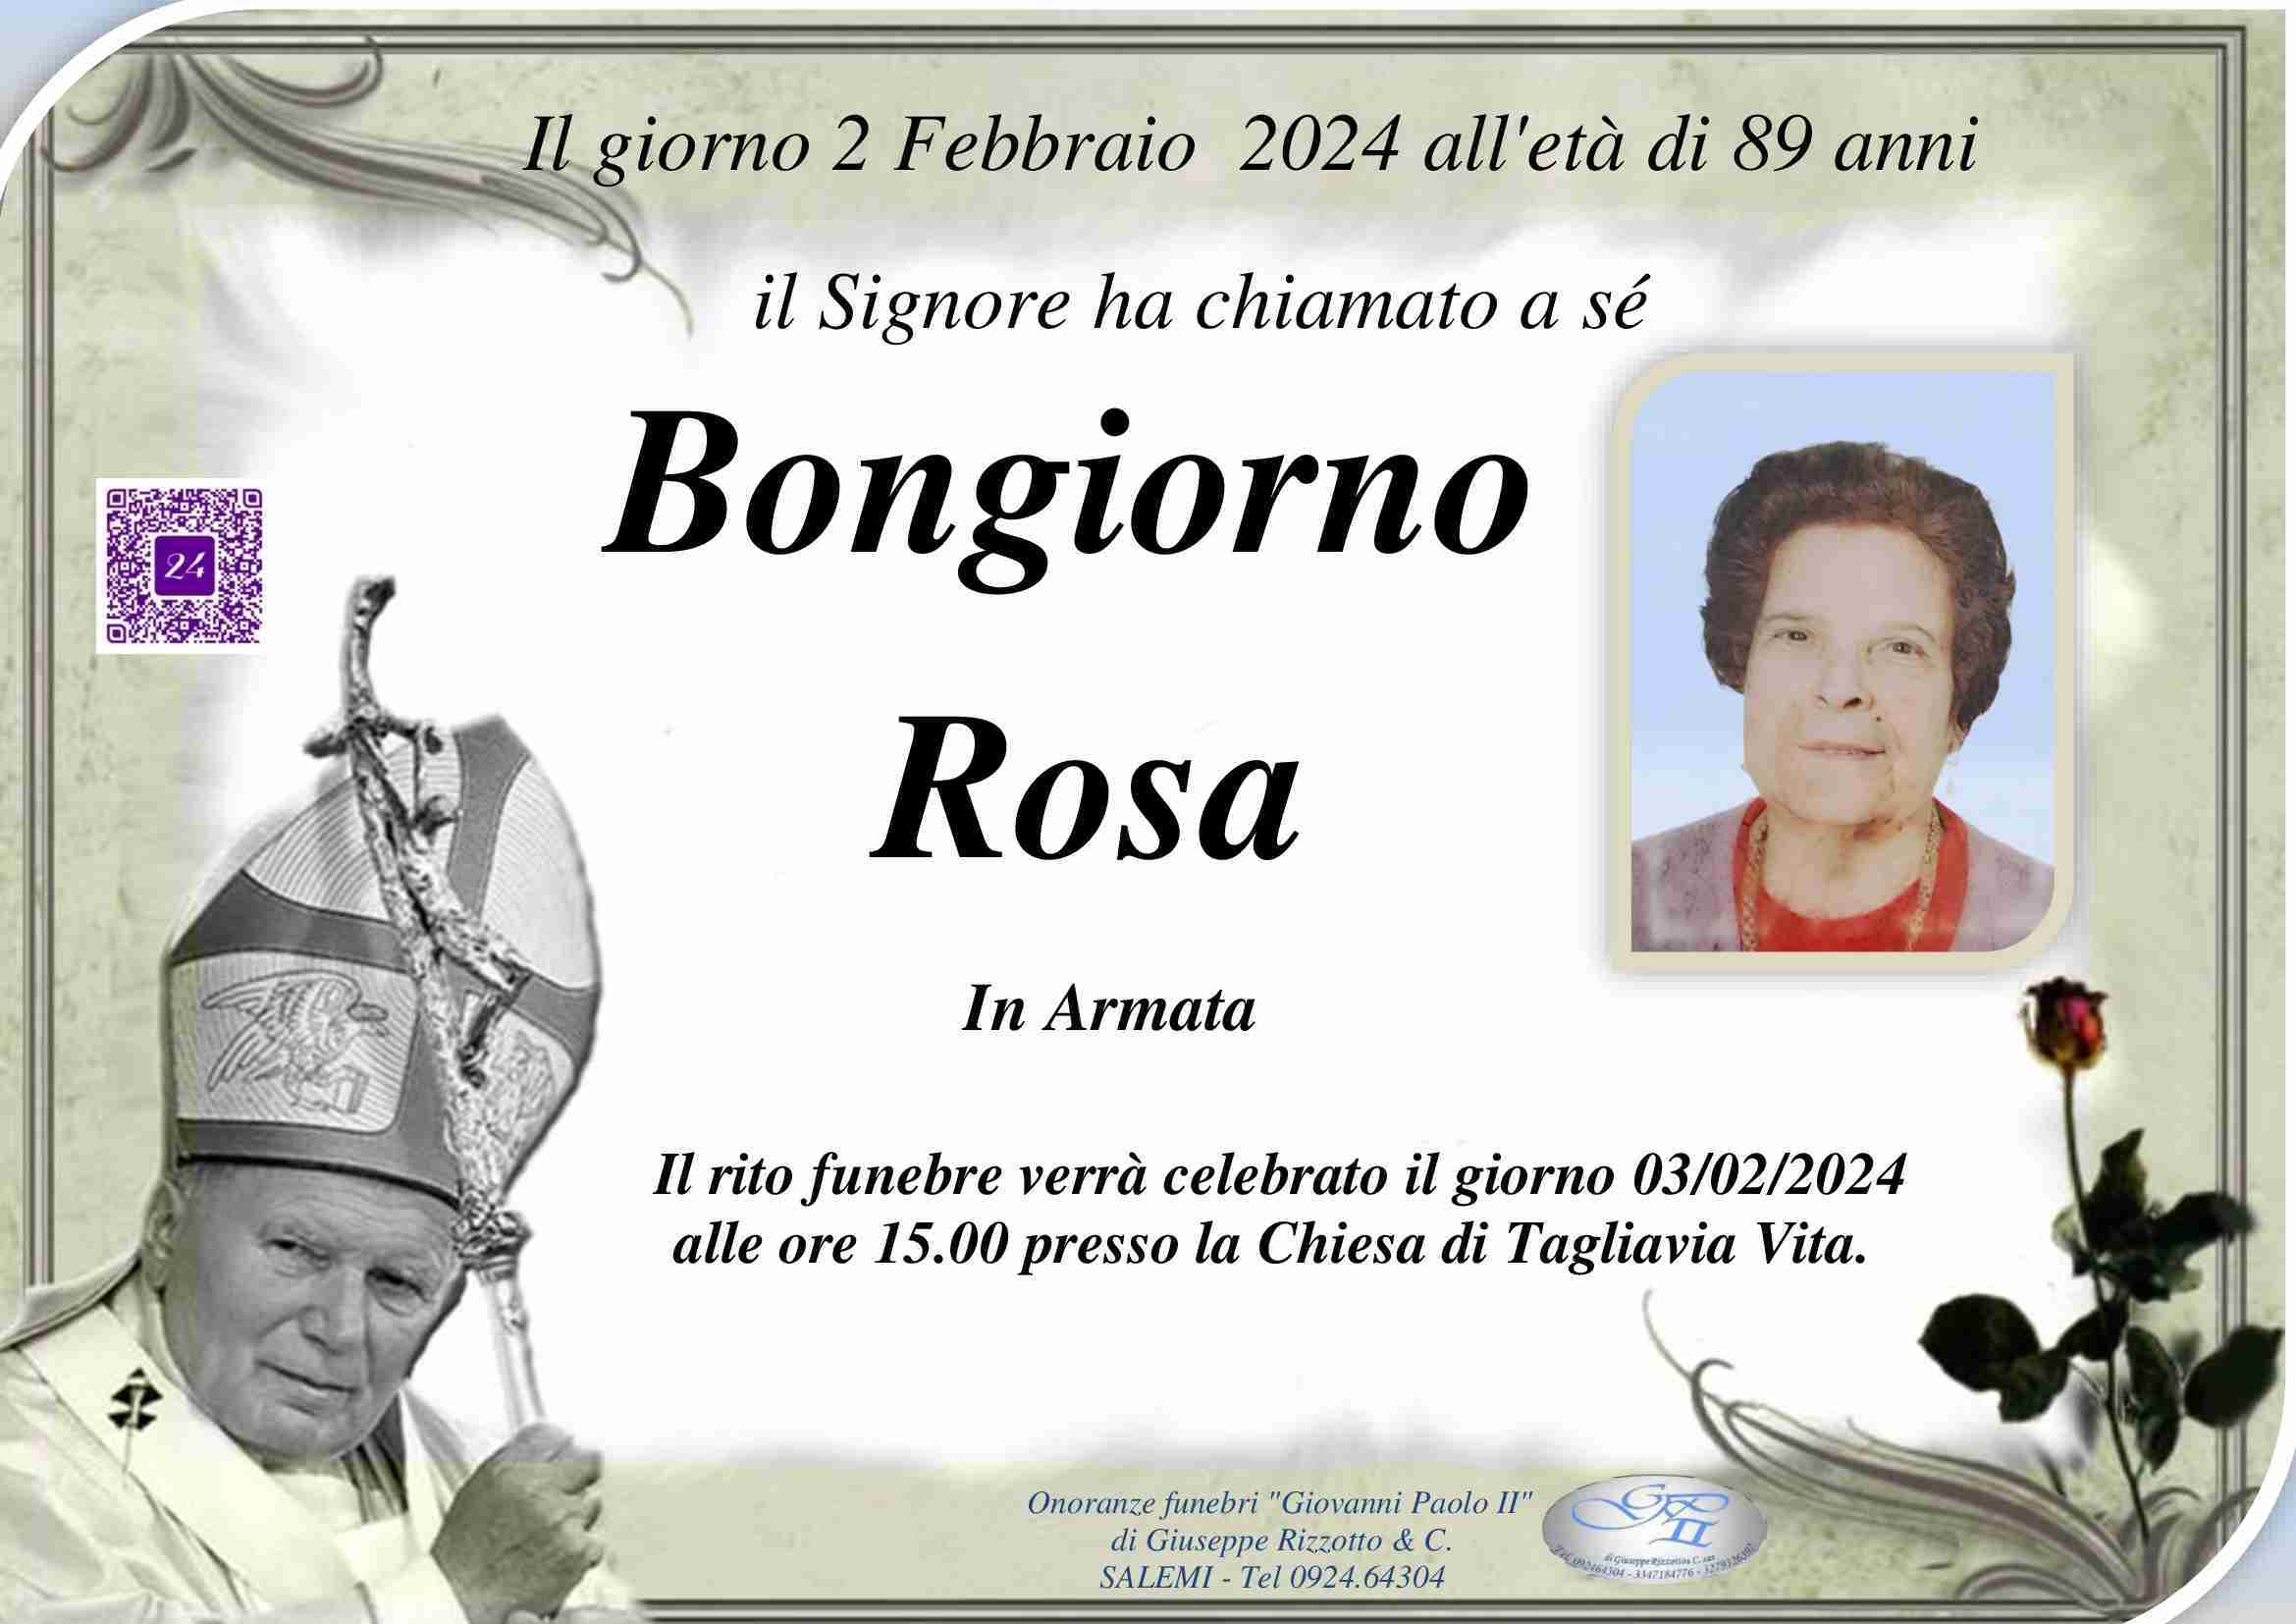 Rosa Bongiorno